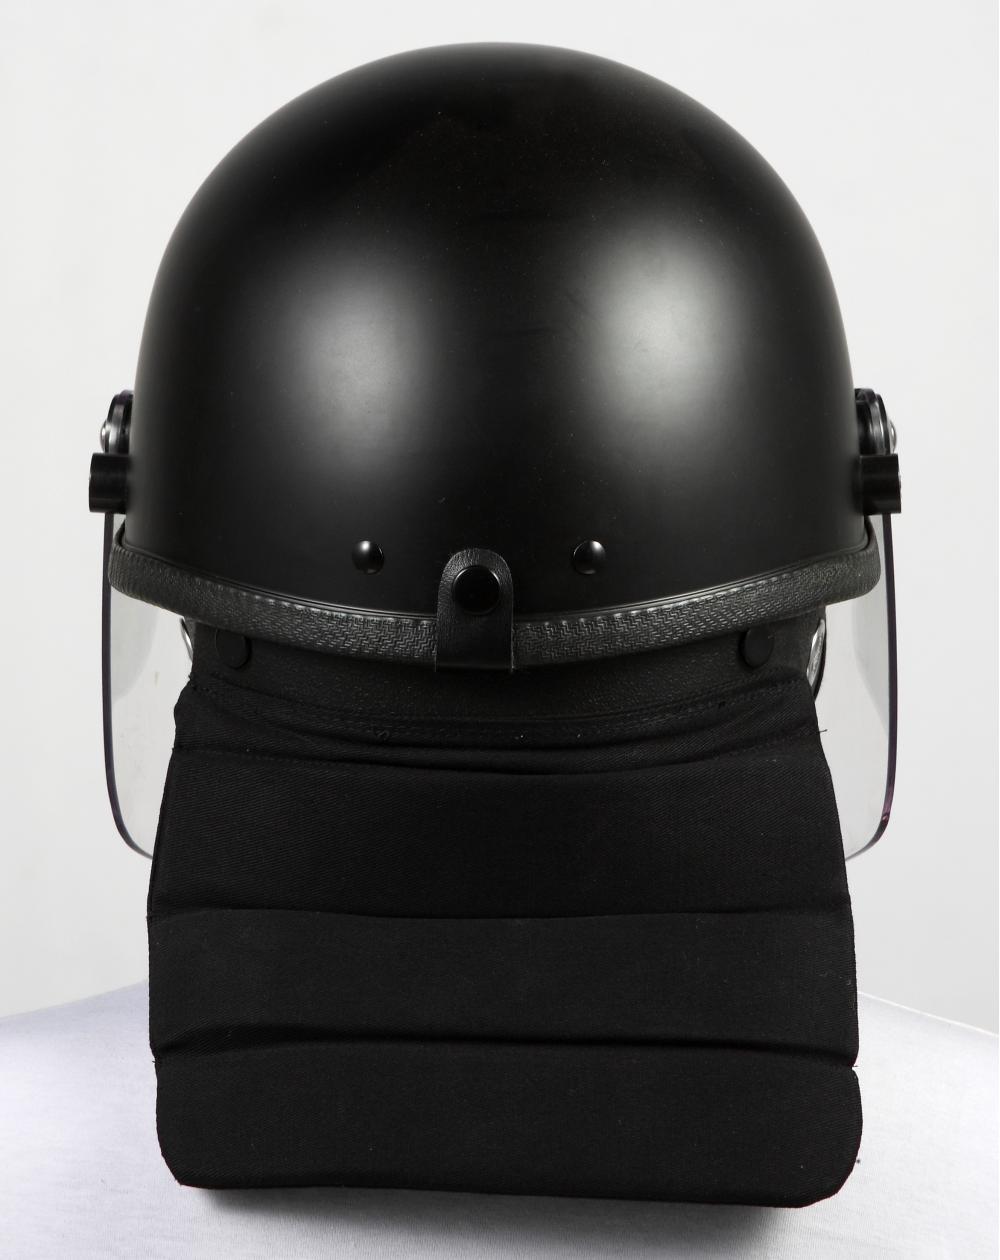 Protección completa contra casco antidisturbios